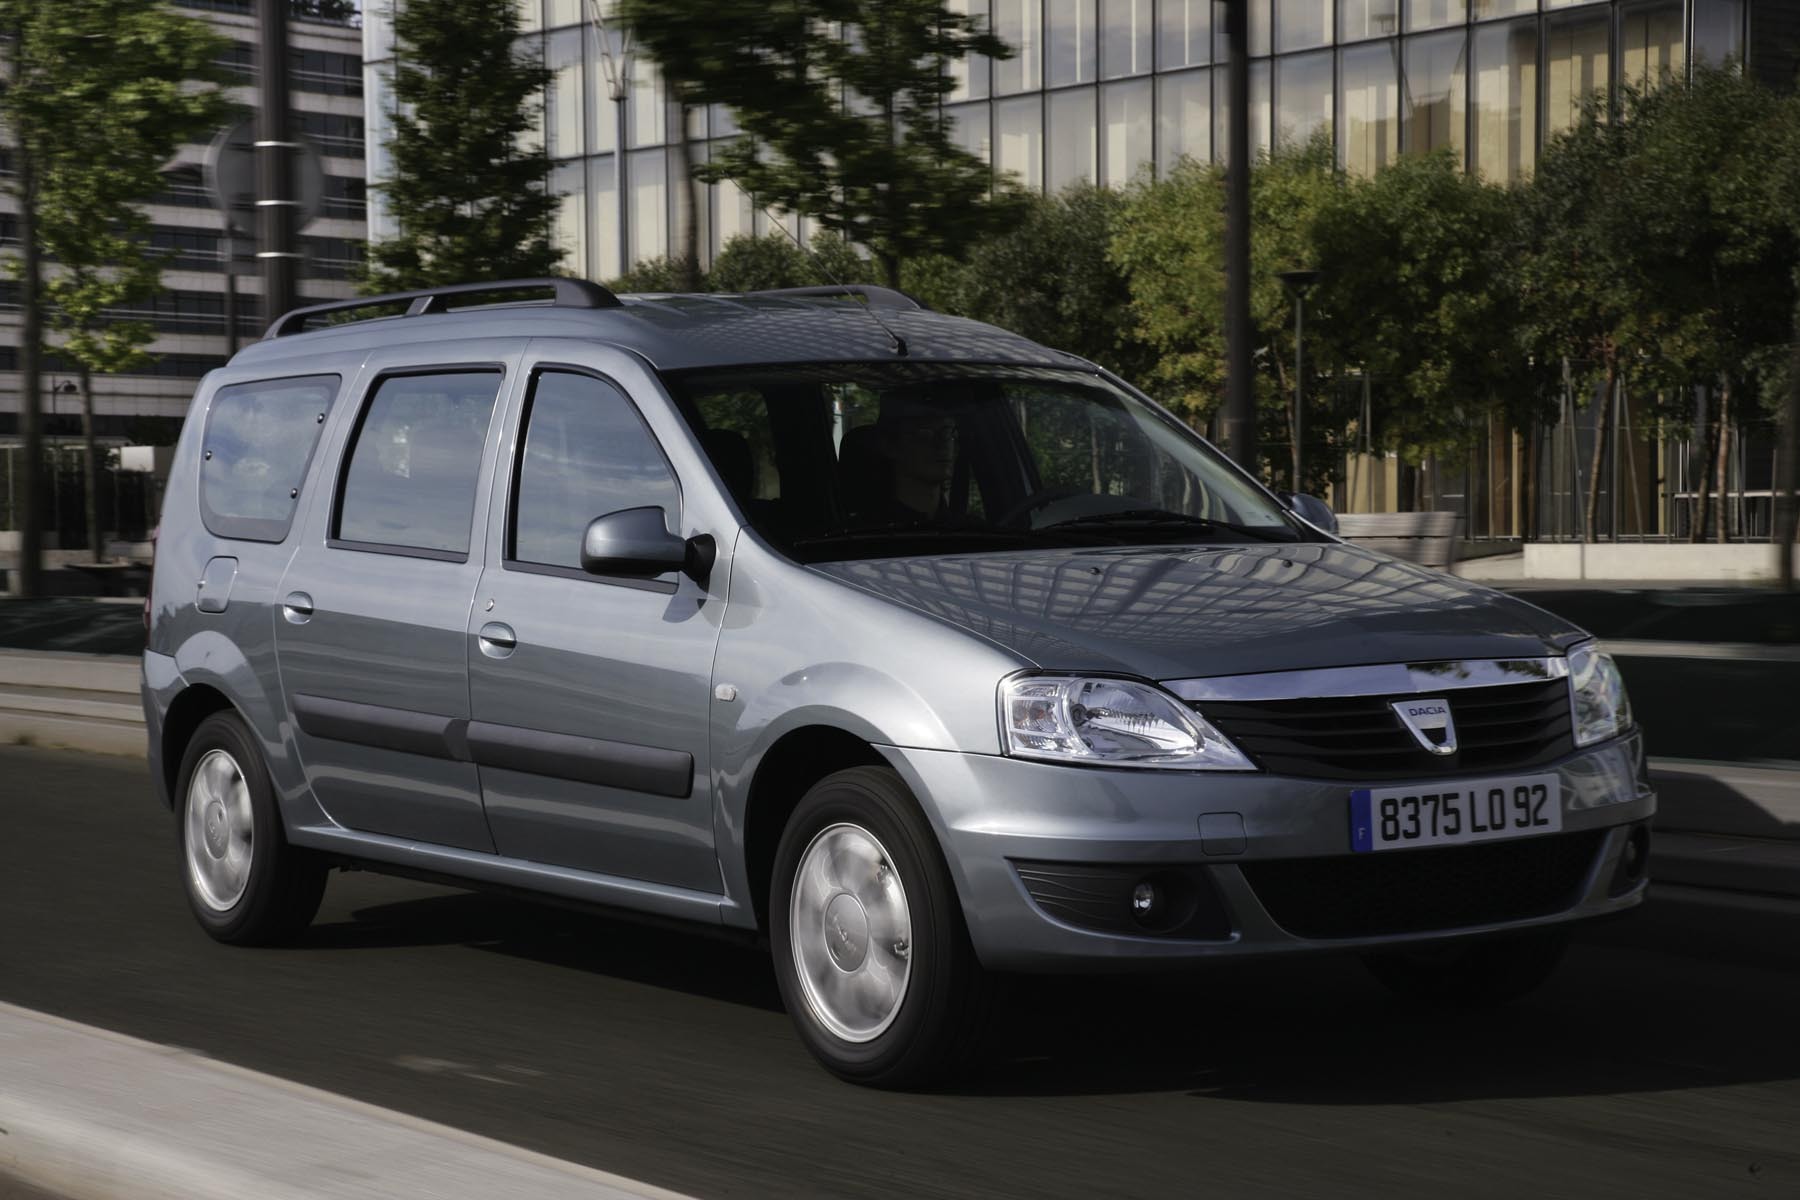 Dacia Logan MCV ramane cea mai ieftina masina cu 7 locuri, pornind de la 10.750 euro